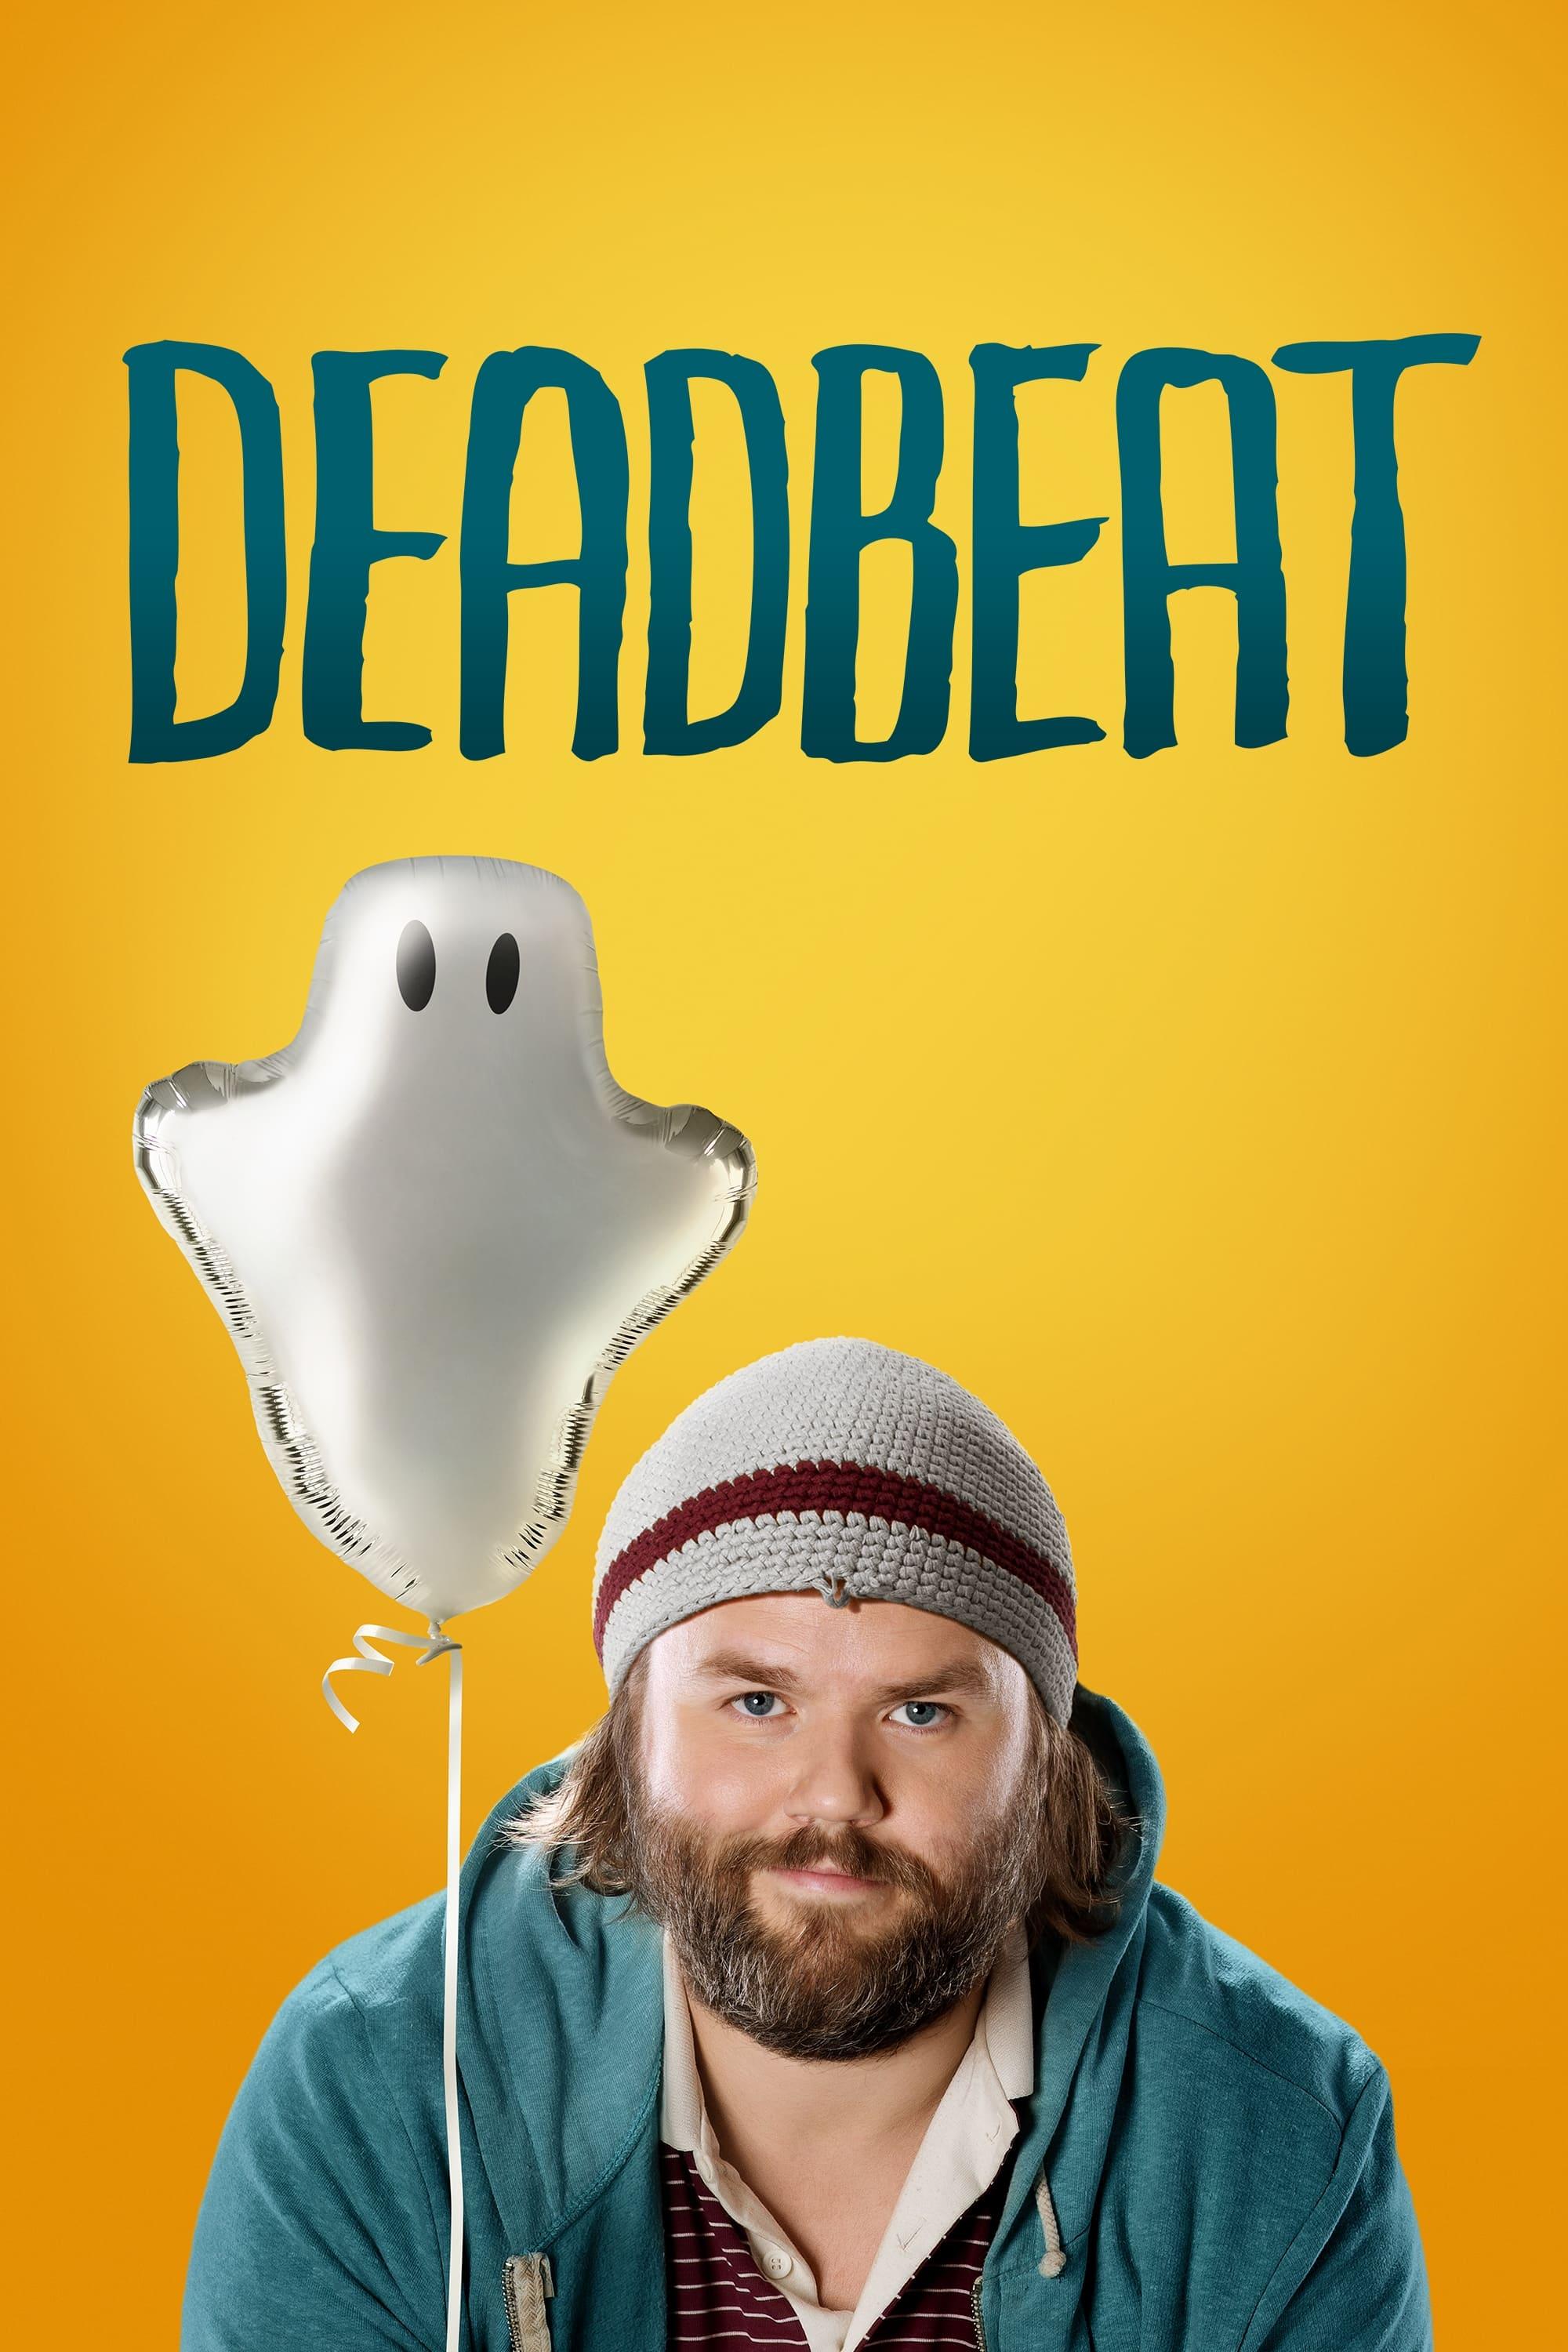 Deadbeat poster